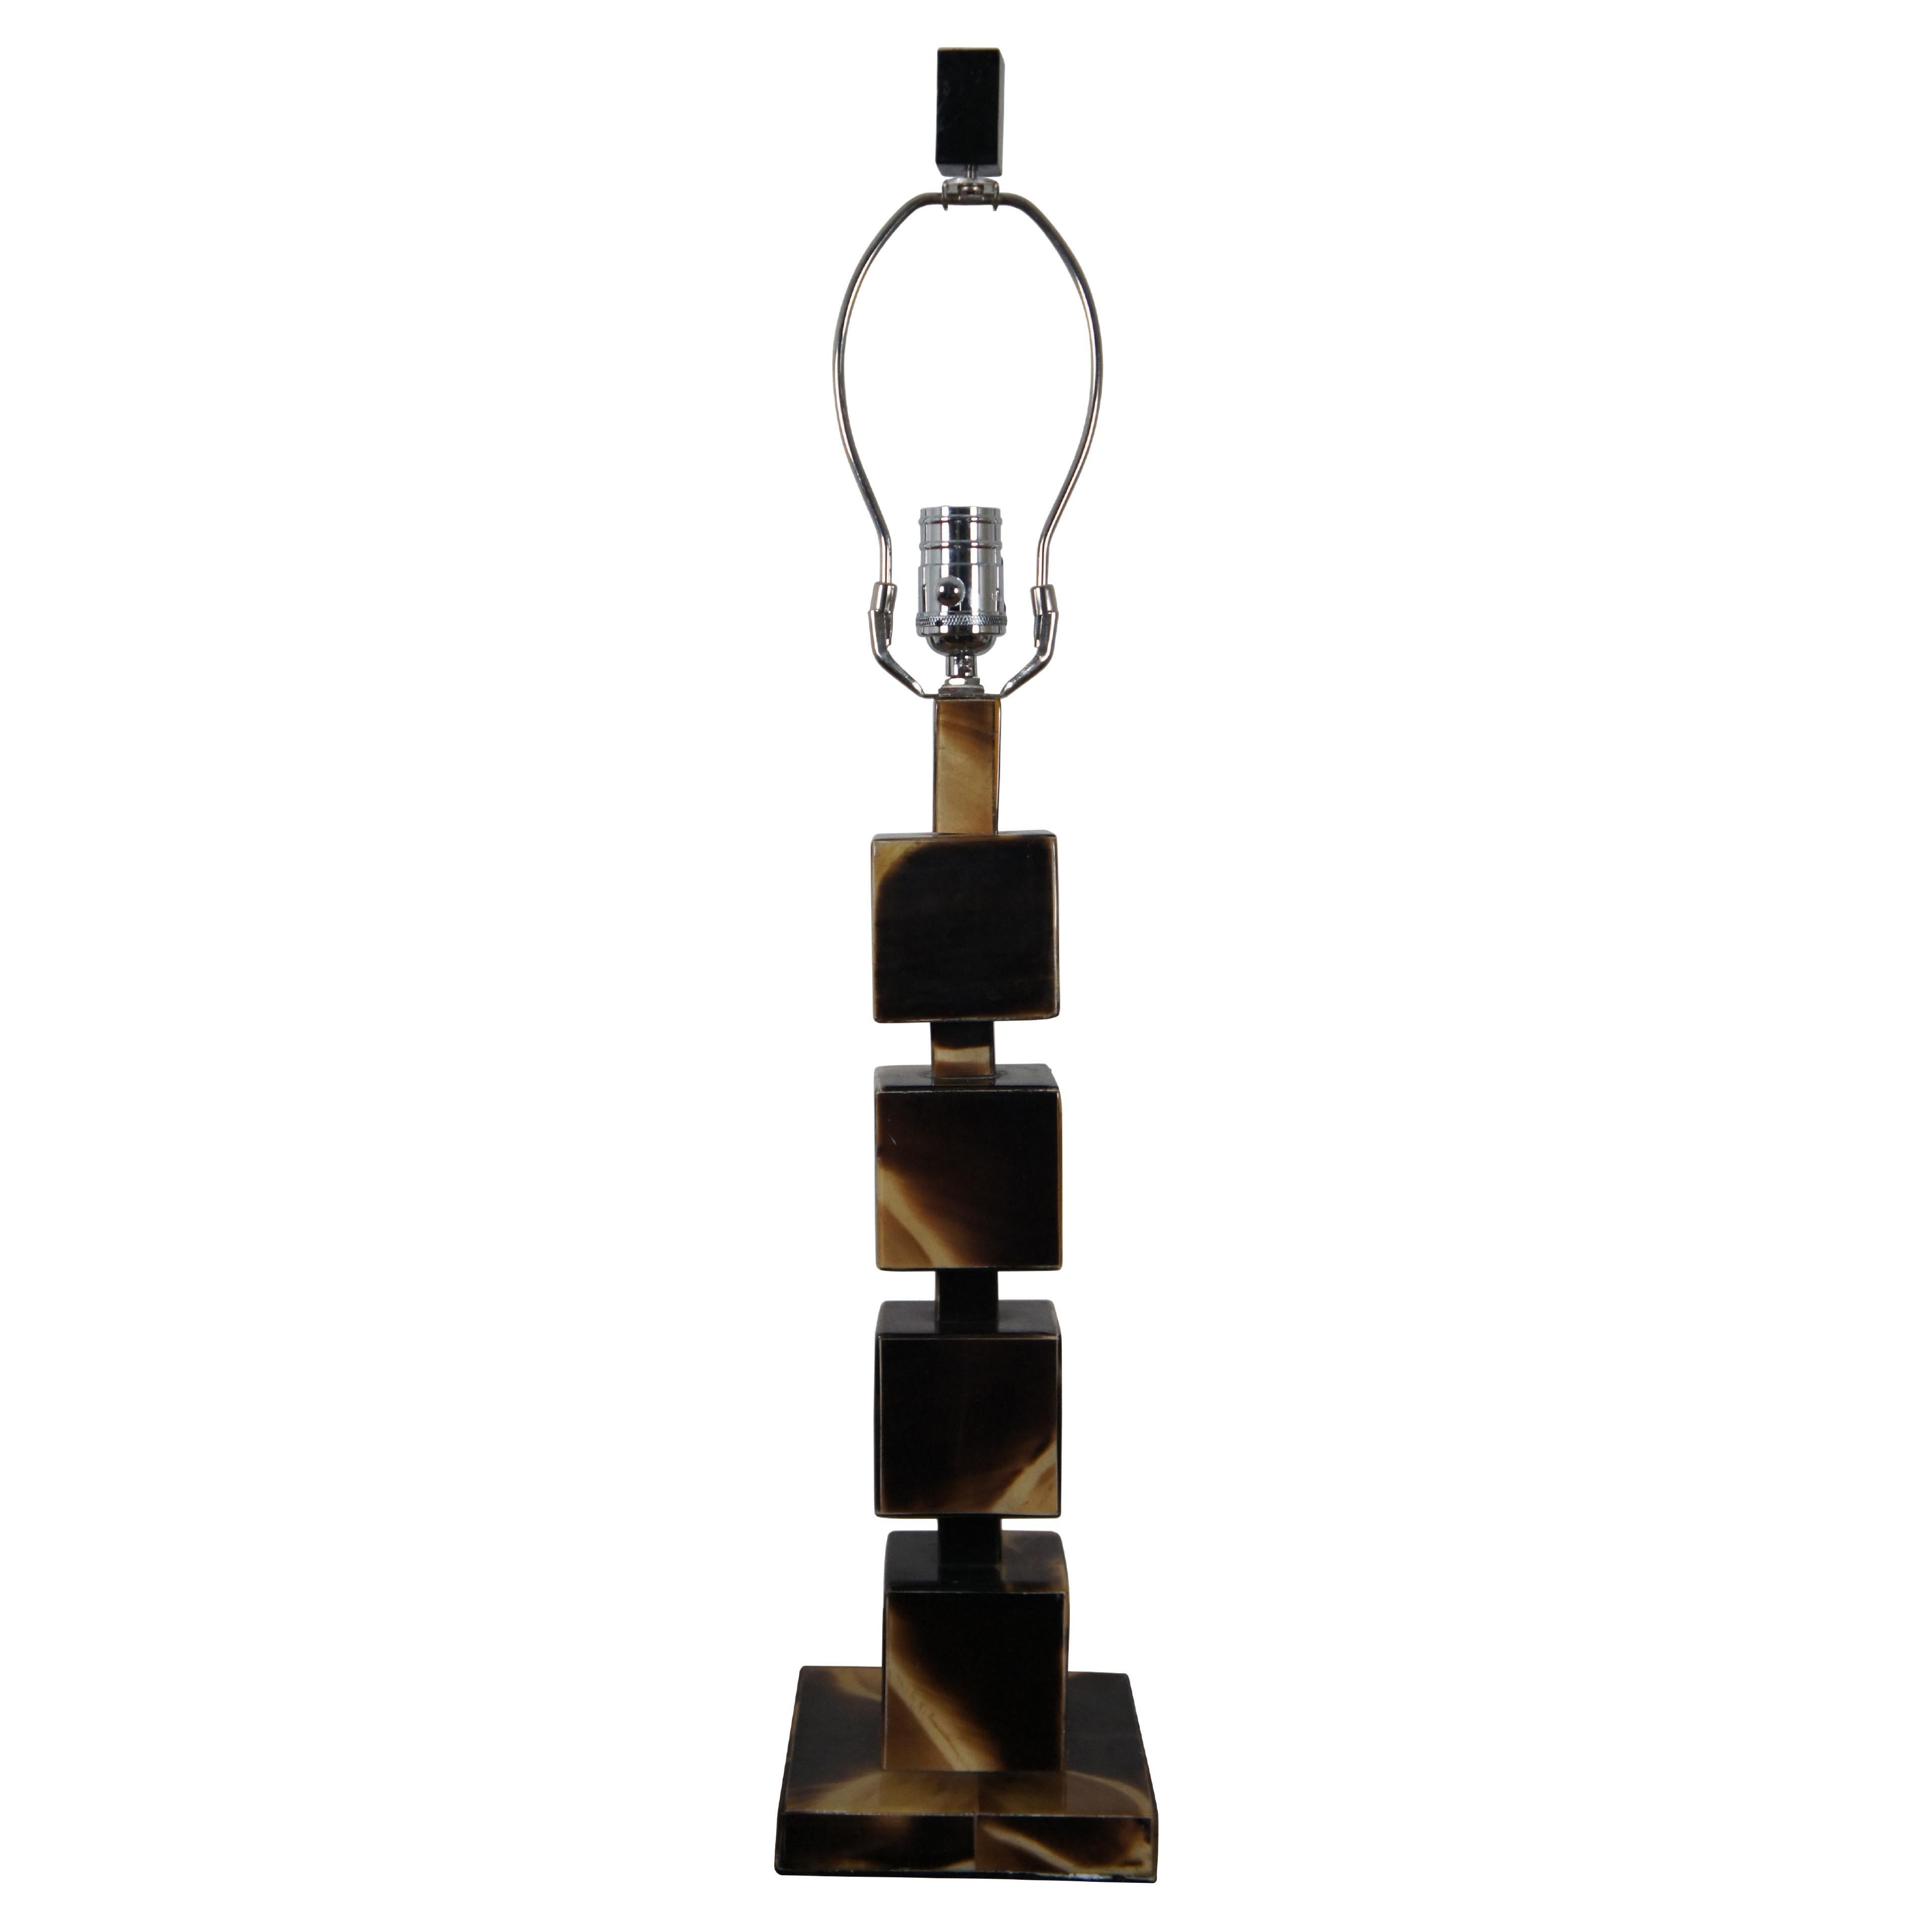 Jamie Young Acrylic Horn Stacked Cube Square Geometric Block Lamp 29" (Lampe à blocs géométriques empilés en acrylique)